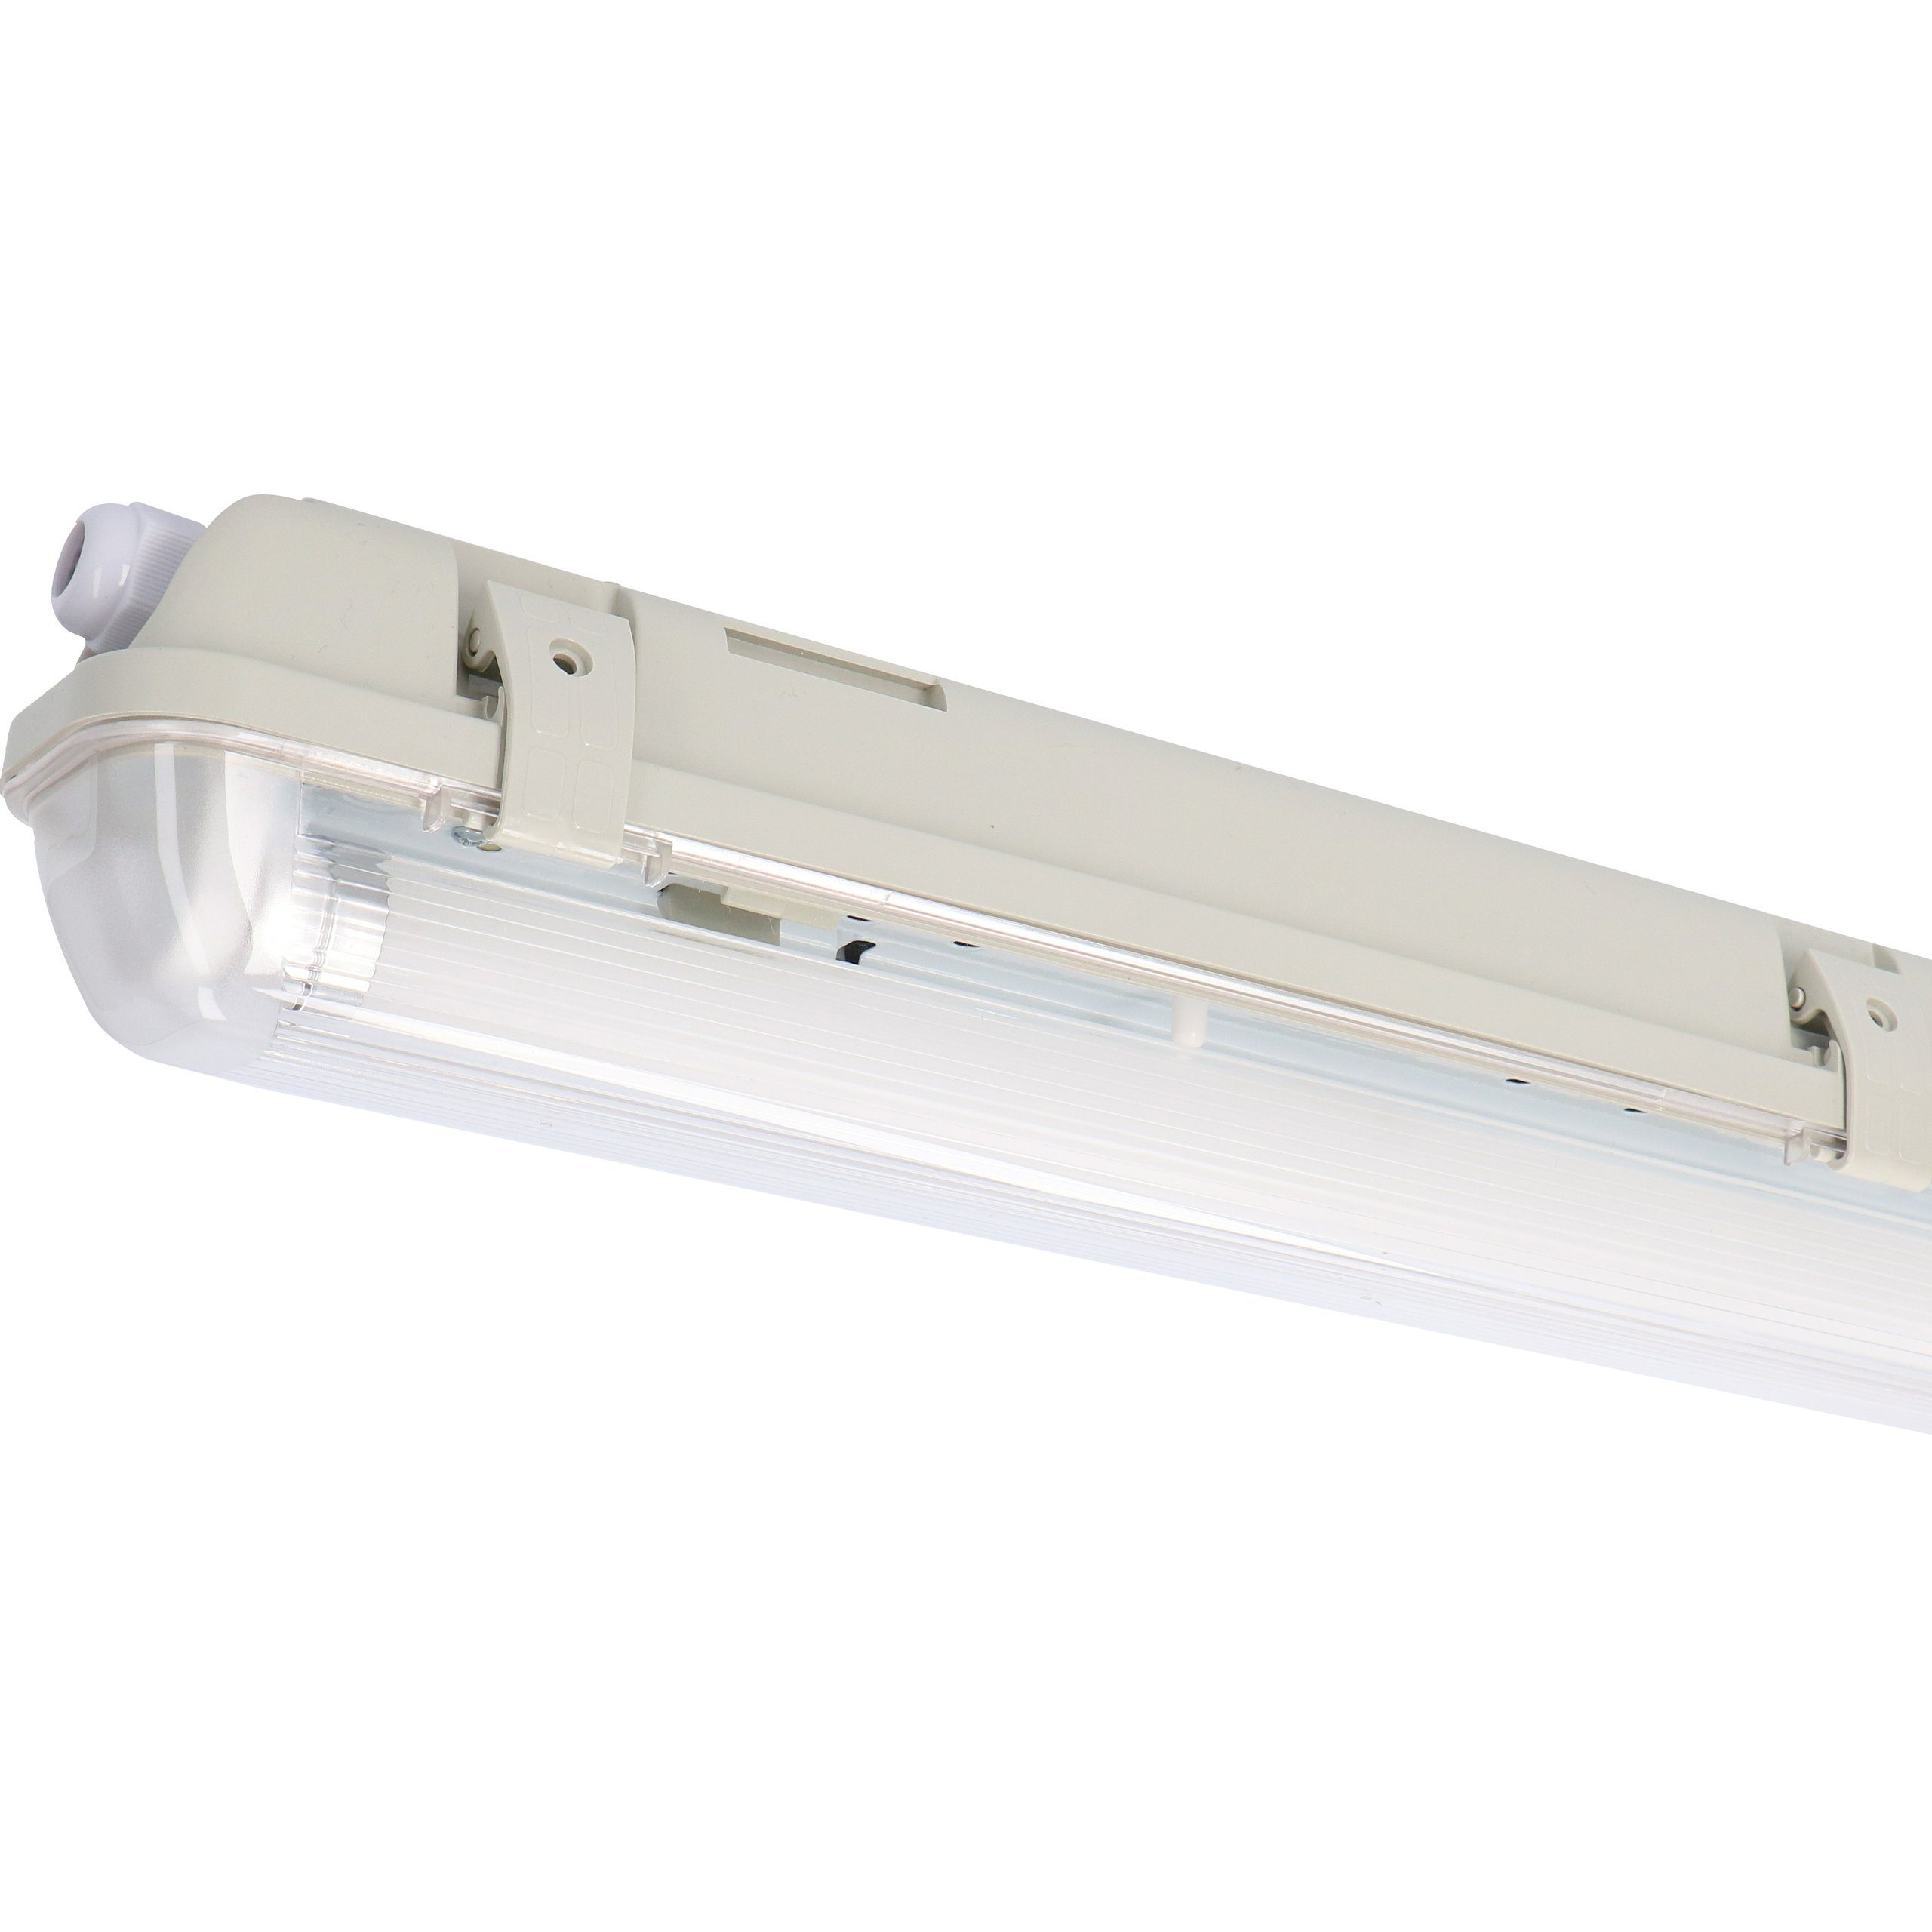 LED's light LED Deckenleuchte 2400200_01 Feuchtraumleuchte, LED, mit LED-Röhre 60 cm 7,5W neutralweiß IP65 G13 | Deckenlampen